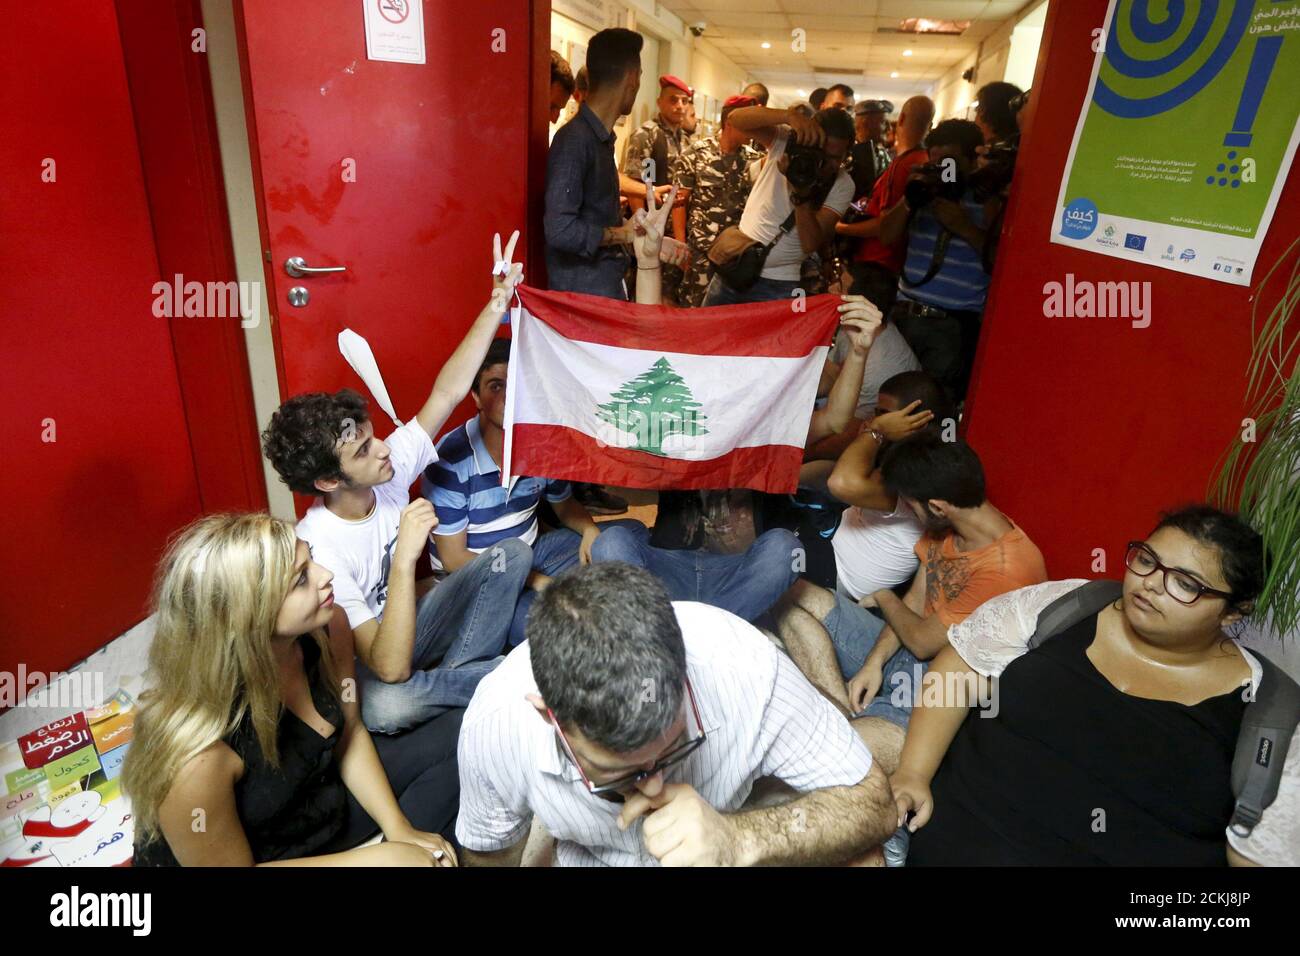 Los manifestantes llevan una bandera libanesa dentro del Ministerio de Medio Ambiente en el centro de Beirut, Líbano 1 de septiembre de 2015. Docenas de manifestantes ocuparon el Ministerio de Medio Ambiente en la capital libanesa Beirut el martes pidiendo al ministro Mohamad al Machnouk que dimita por una crisis de eliminación de basura, la última de una ola de protestas contra el sistema político paralizado. Cientos de otros manifestantes se reunieron fuera del edificio mientras la policía antidisturbios tomó posiciones en las calles de los alrededores y la campaña antigubernamental "You Stink" convocó una nueva manifestación en una plaza cercana por la tarde. REUTERS/Mohamed Foto de stock